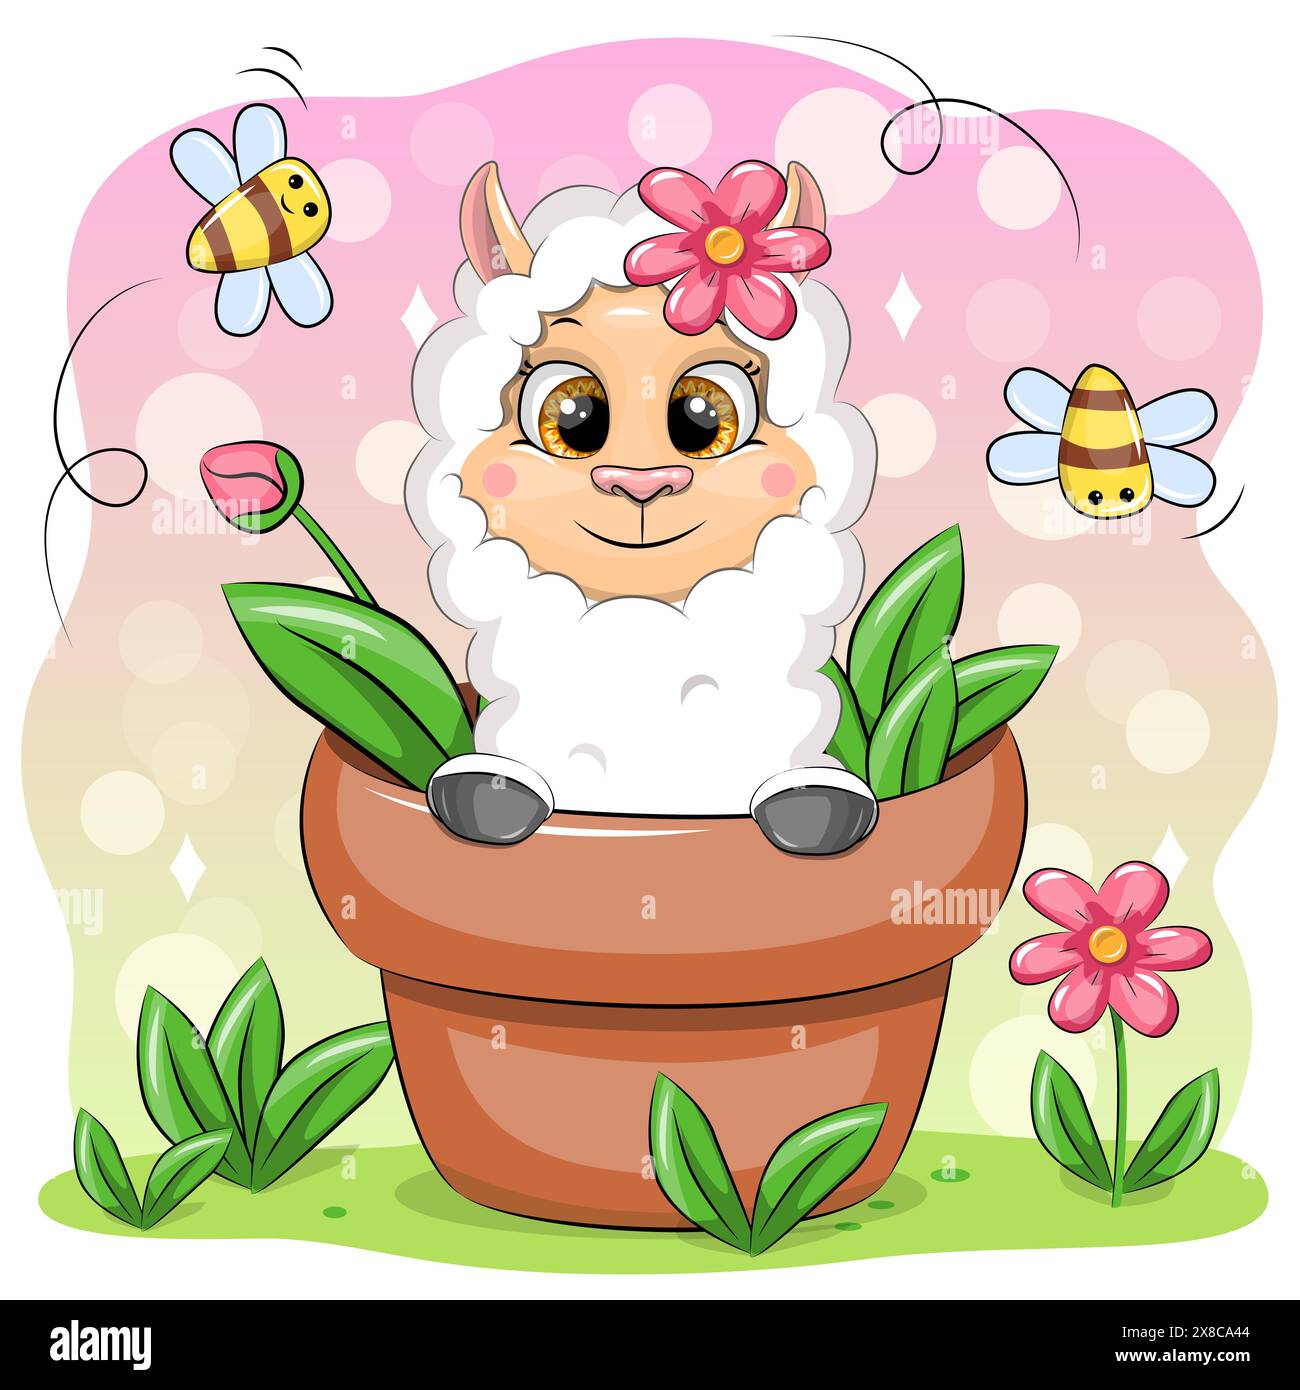 Mignon lama de dessin animé dans un pot de fleurs avec des abeilles et des fleurs. Illustration vectorielle de l'animal dans la nature. Illustration de Vecteur